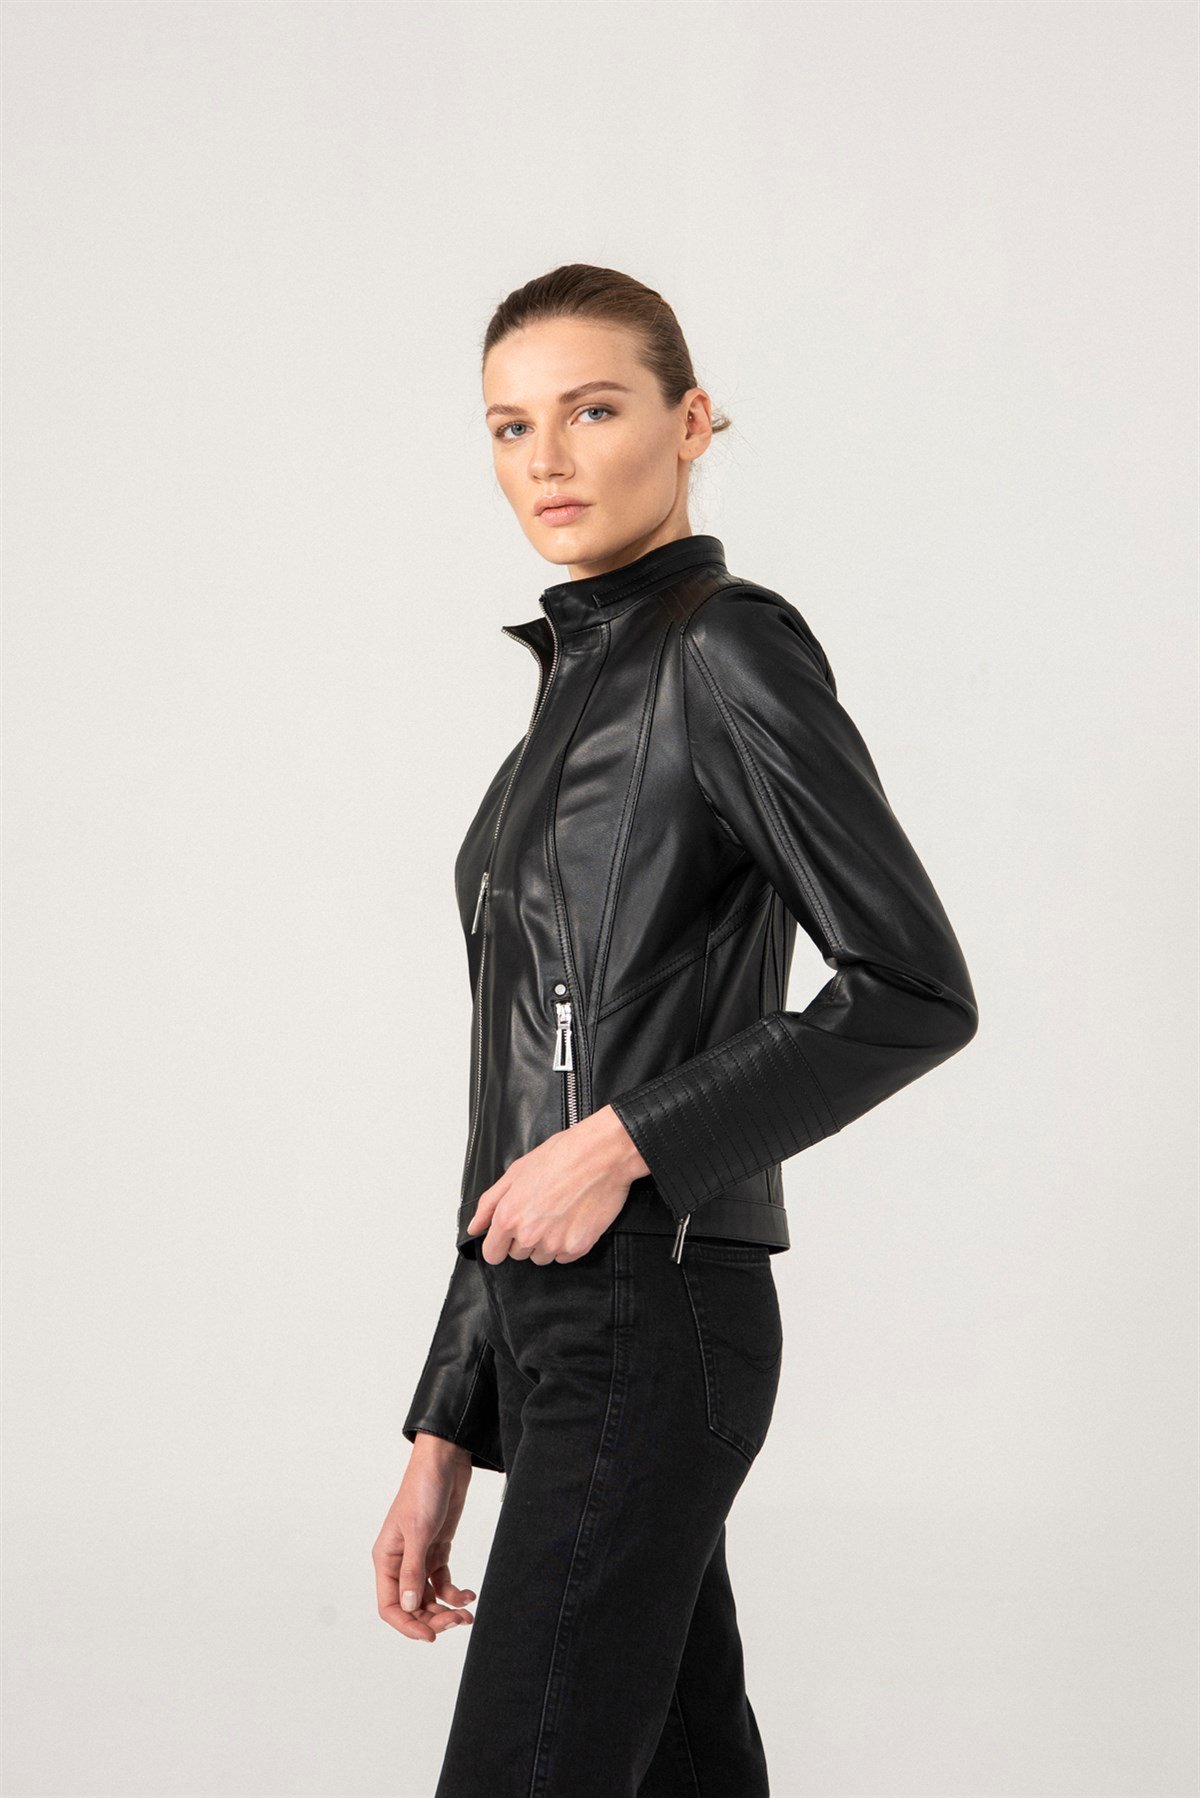 MELANIE Kadın Spor Siyah Deri Ceket Kadın Deri Ceket Modelleri